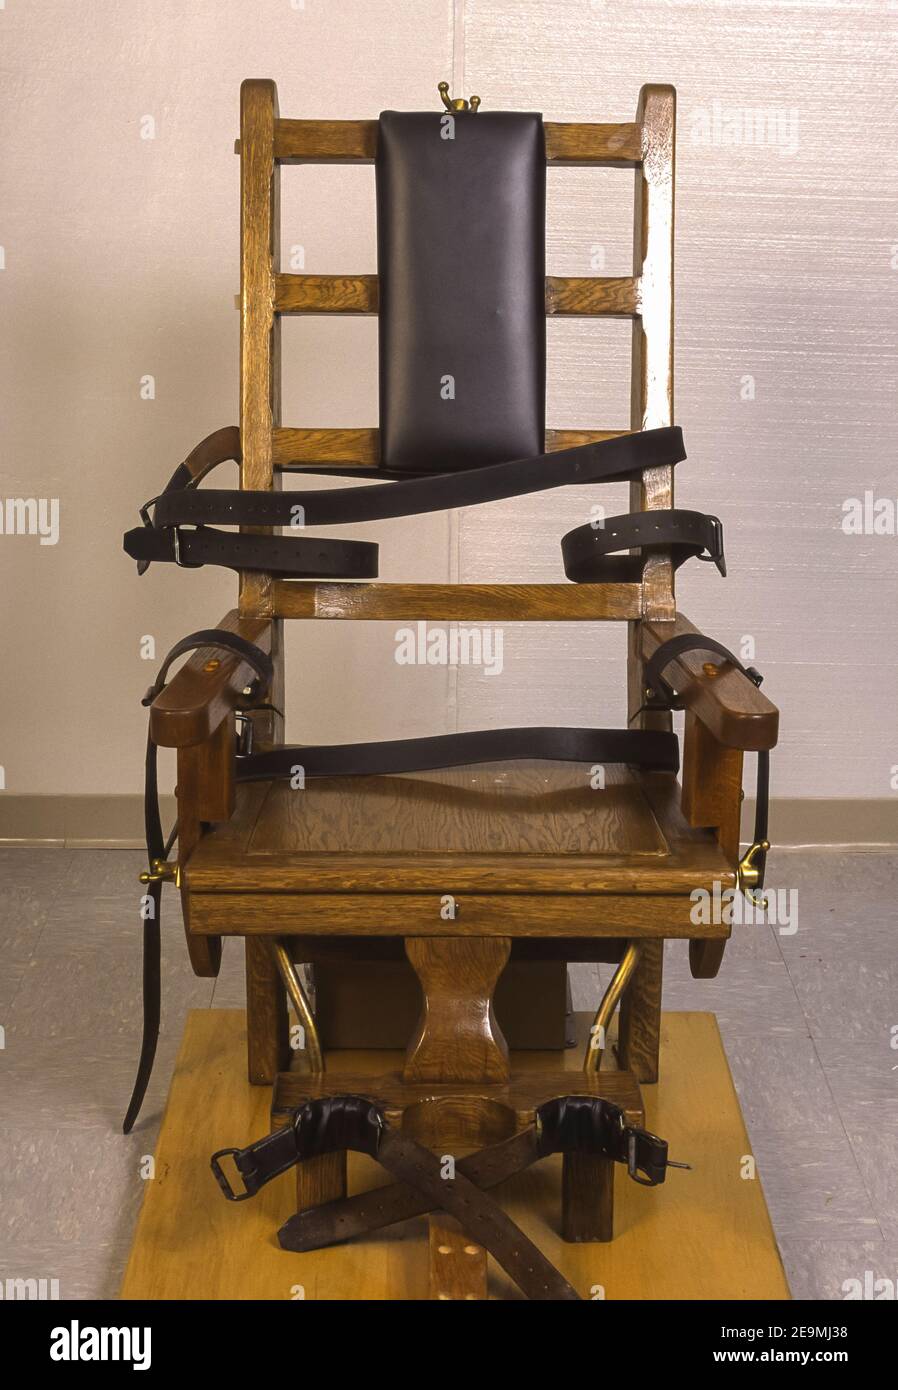 JARRATT, VIRGINIE, États-Unis - chaise électrique pour la peine de mort au  Centre correctionnel de Greensville, pour la peine capitale Photo Stock -  Alamy